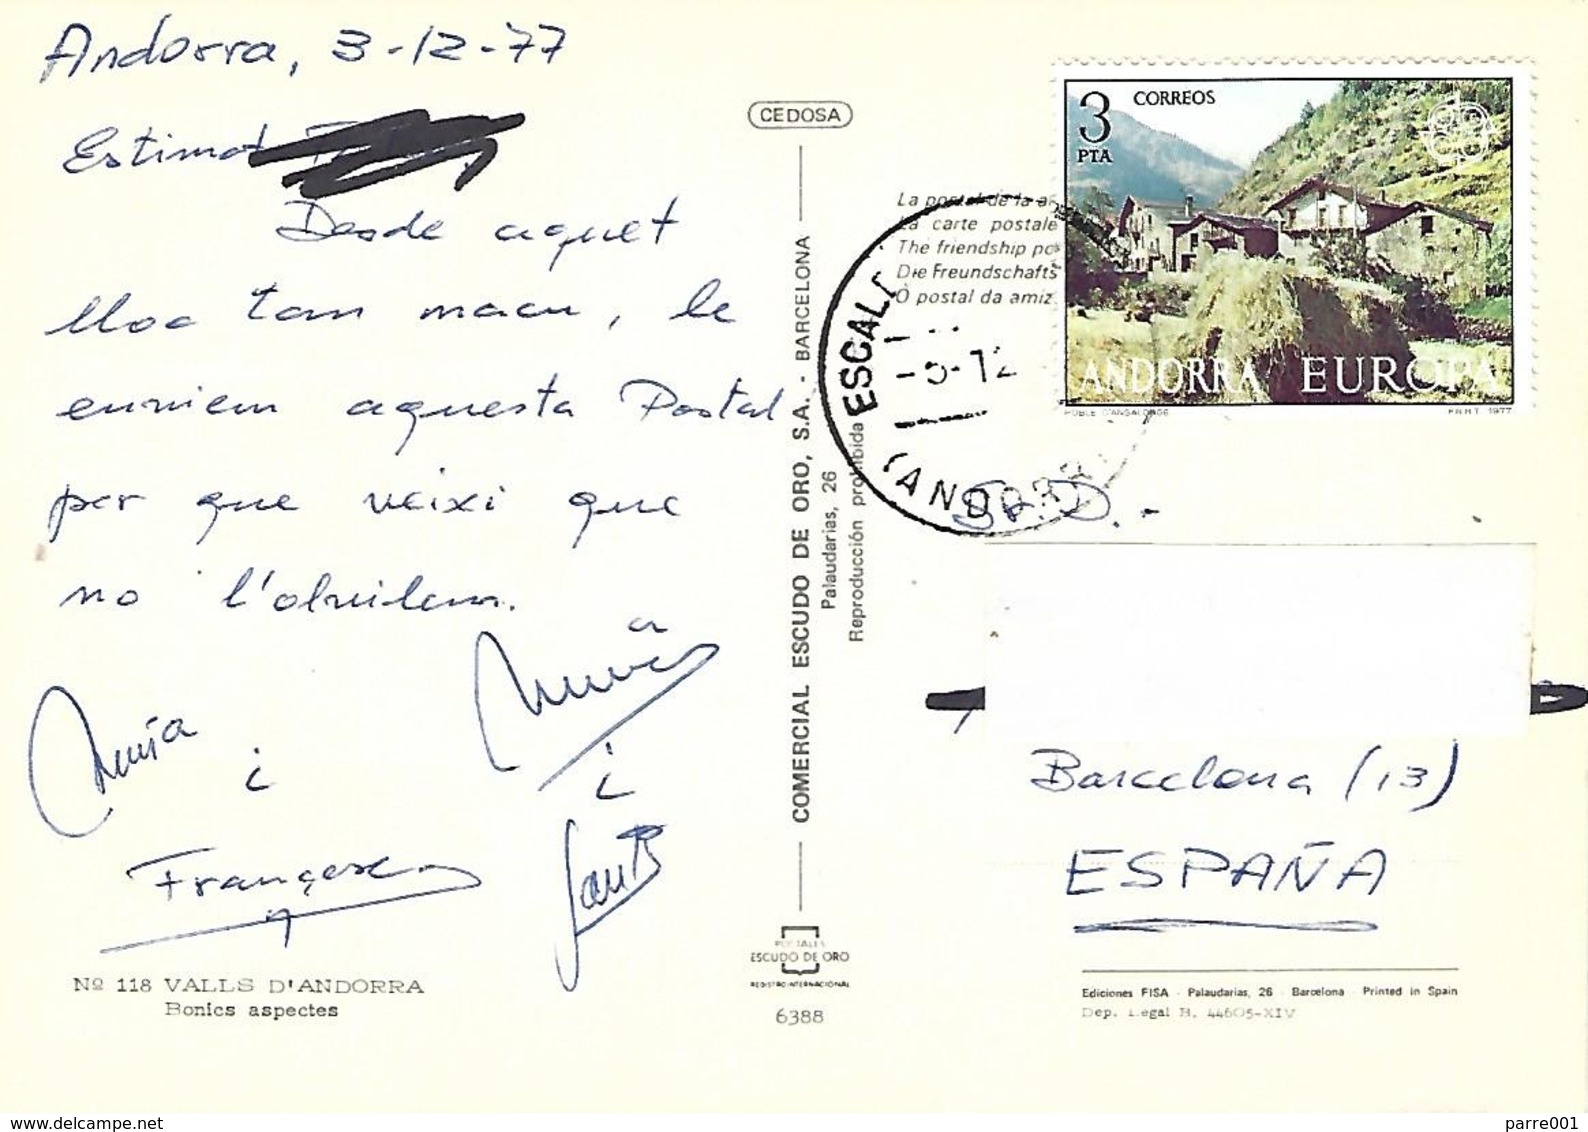 Andorra 1977 Escaldes Farming Landscape EUROPA CEPT Viewcard - 1977